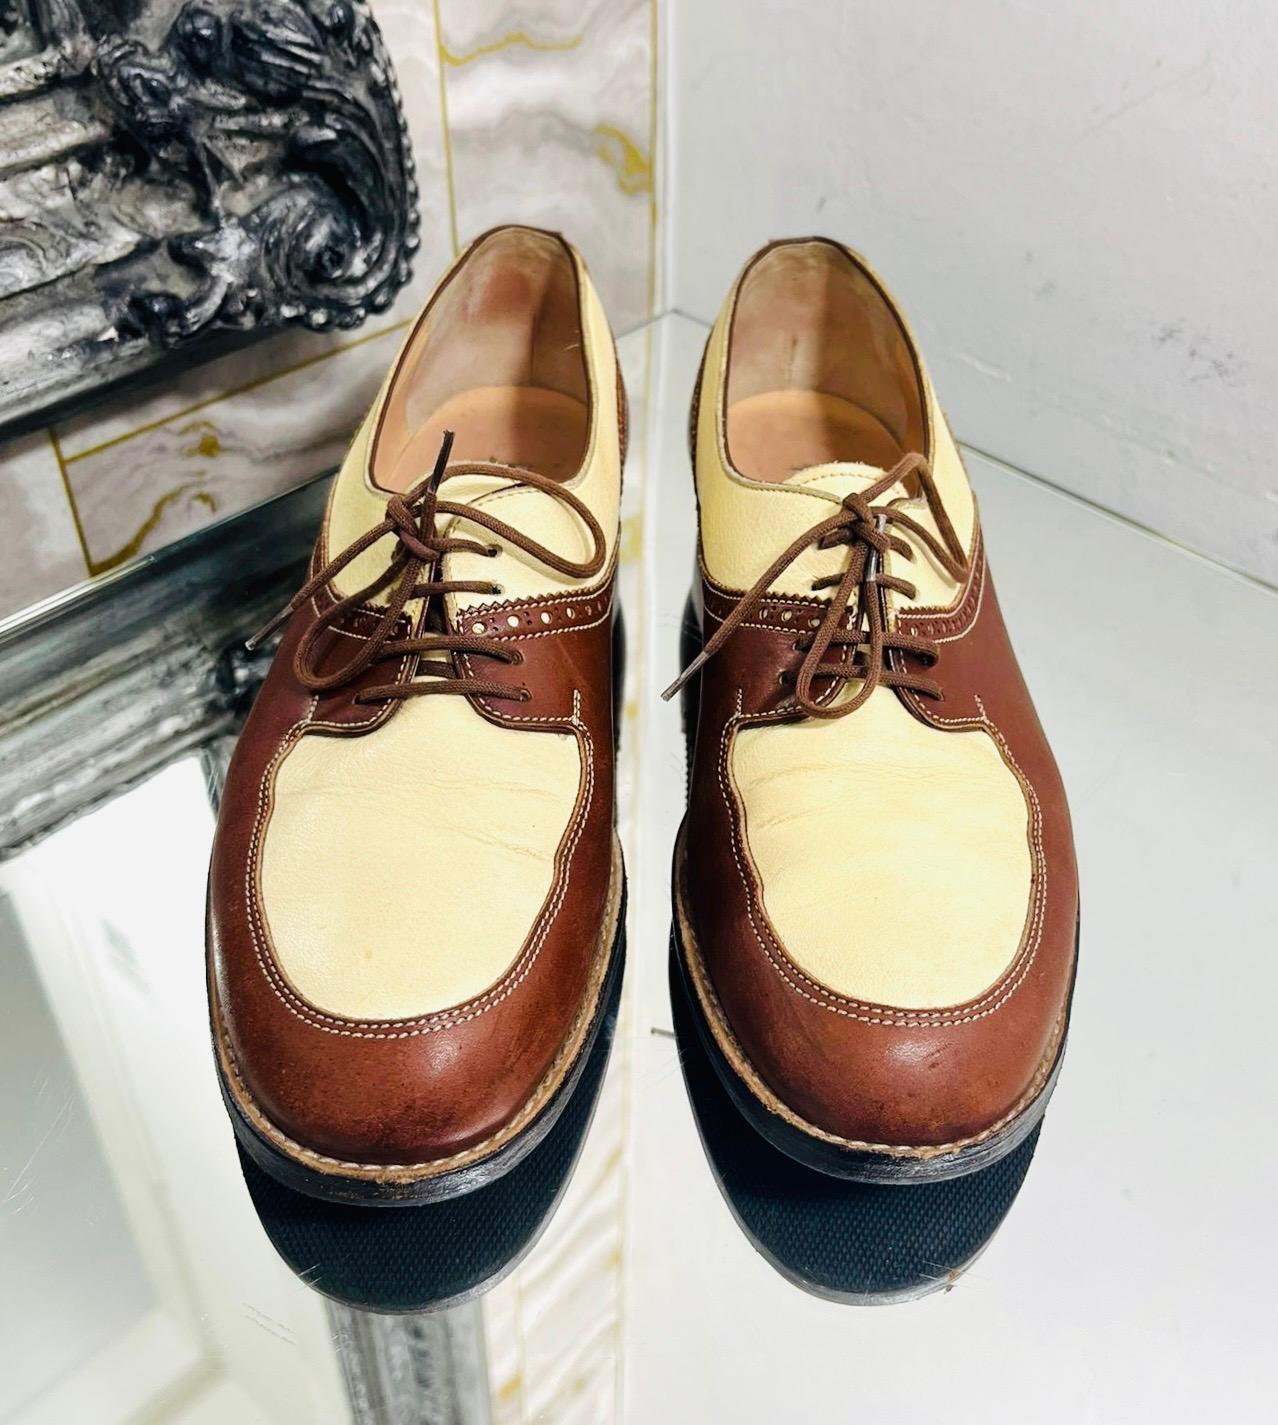 Manolo Blahnik - Brogues en cuir

Chaussures à lacets marron conçues avec des empiècements ivoire et des détails de perforation décoratifs.

Ils sont dotés de bouts ronds et d'une doublure et d'une semelle intérieure en cuir.

Taille - 40

État -